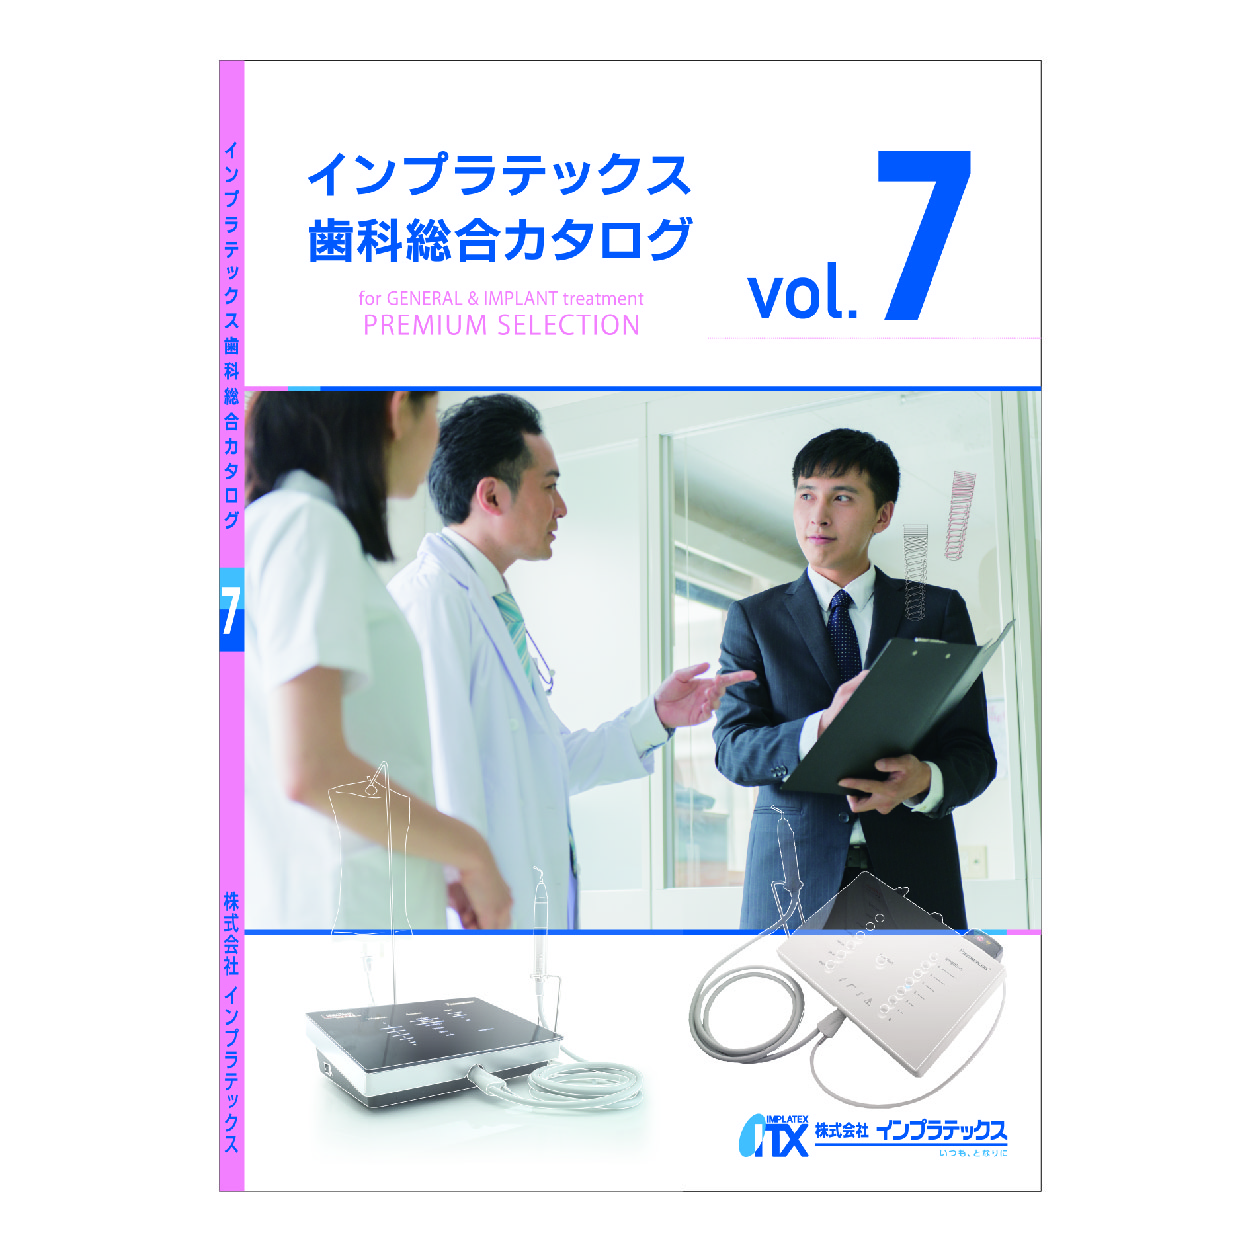 インプラテックス歯科総合カタログVOL.7